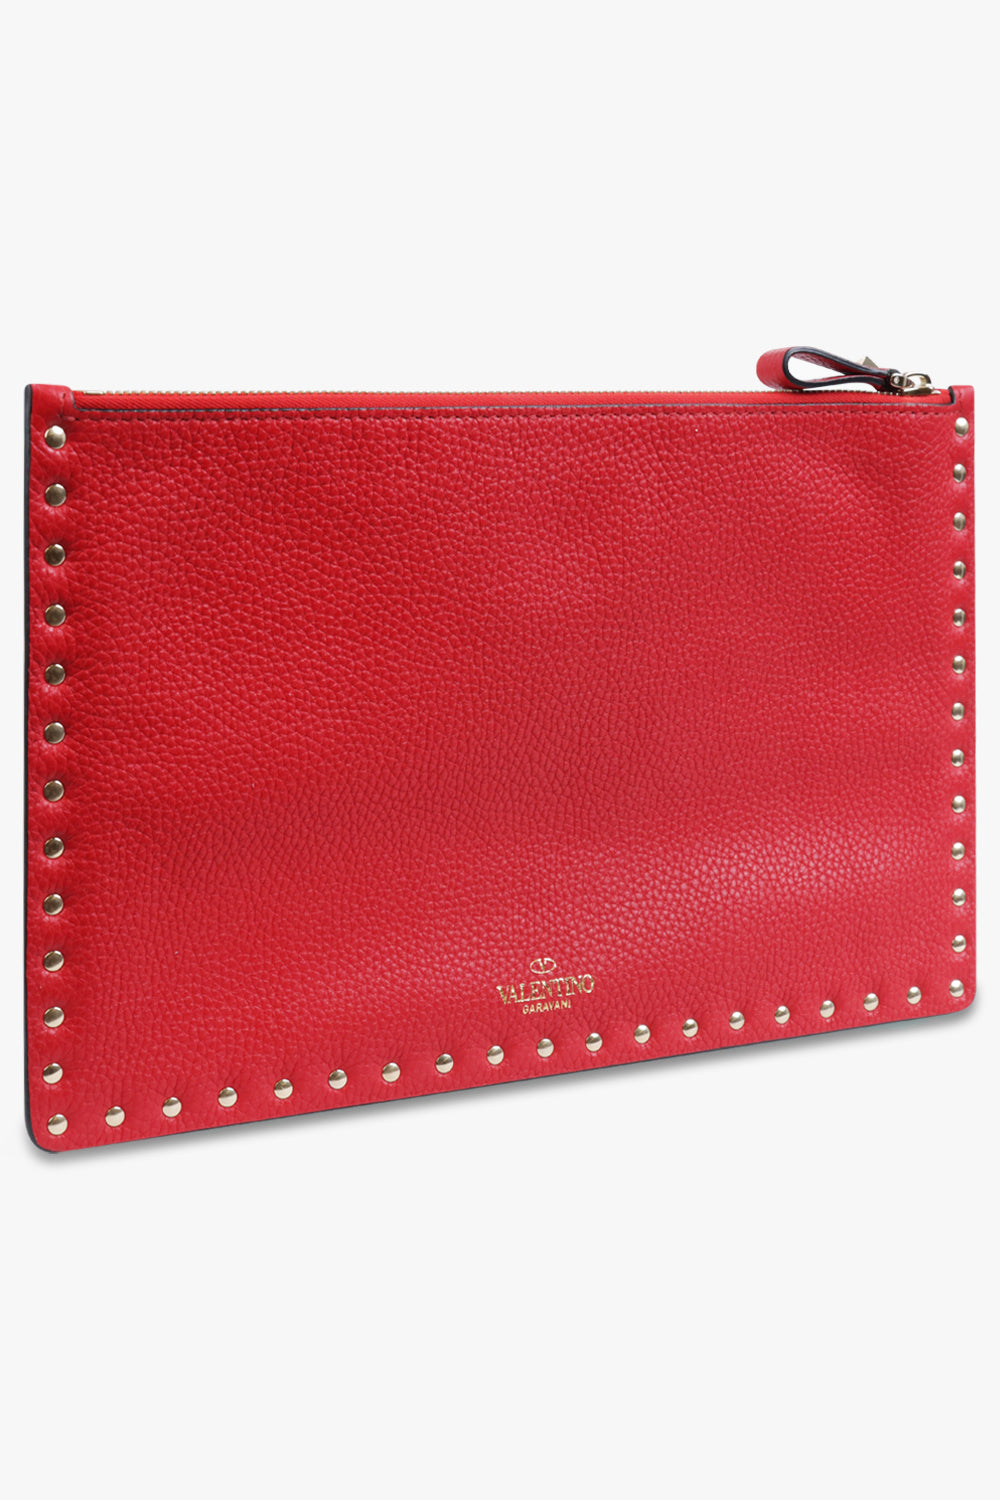 NEW Valentino By Mario Valentino Mia Crossbody Bag in Lipstick Red |  Crossbody bag, Bags, Mario valentino